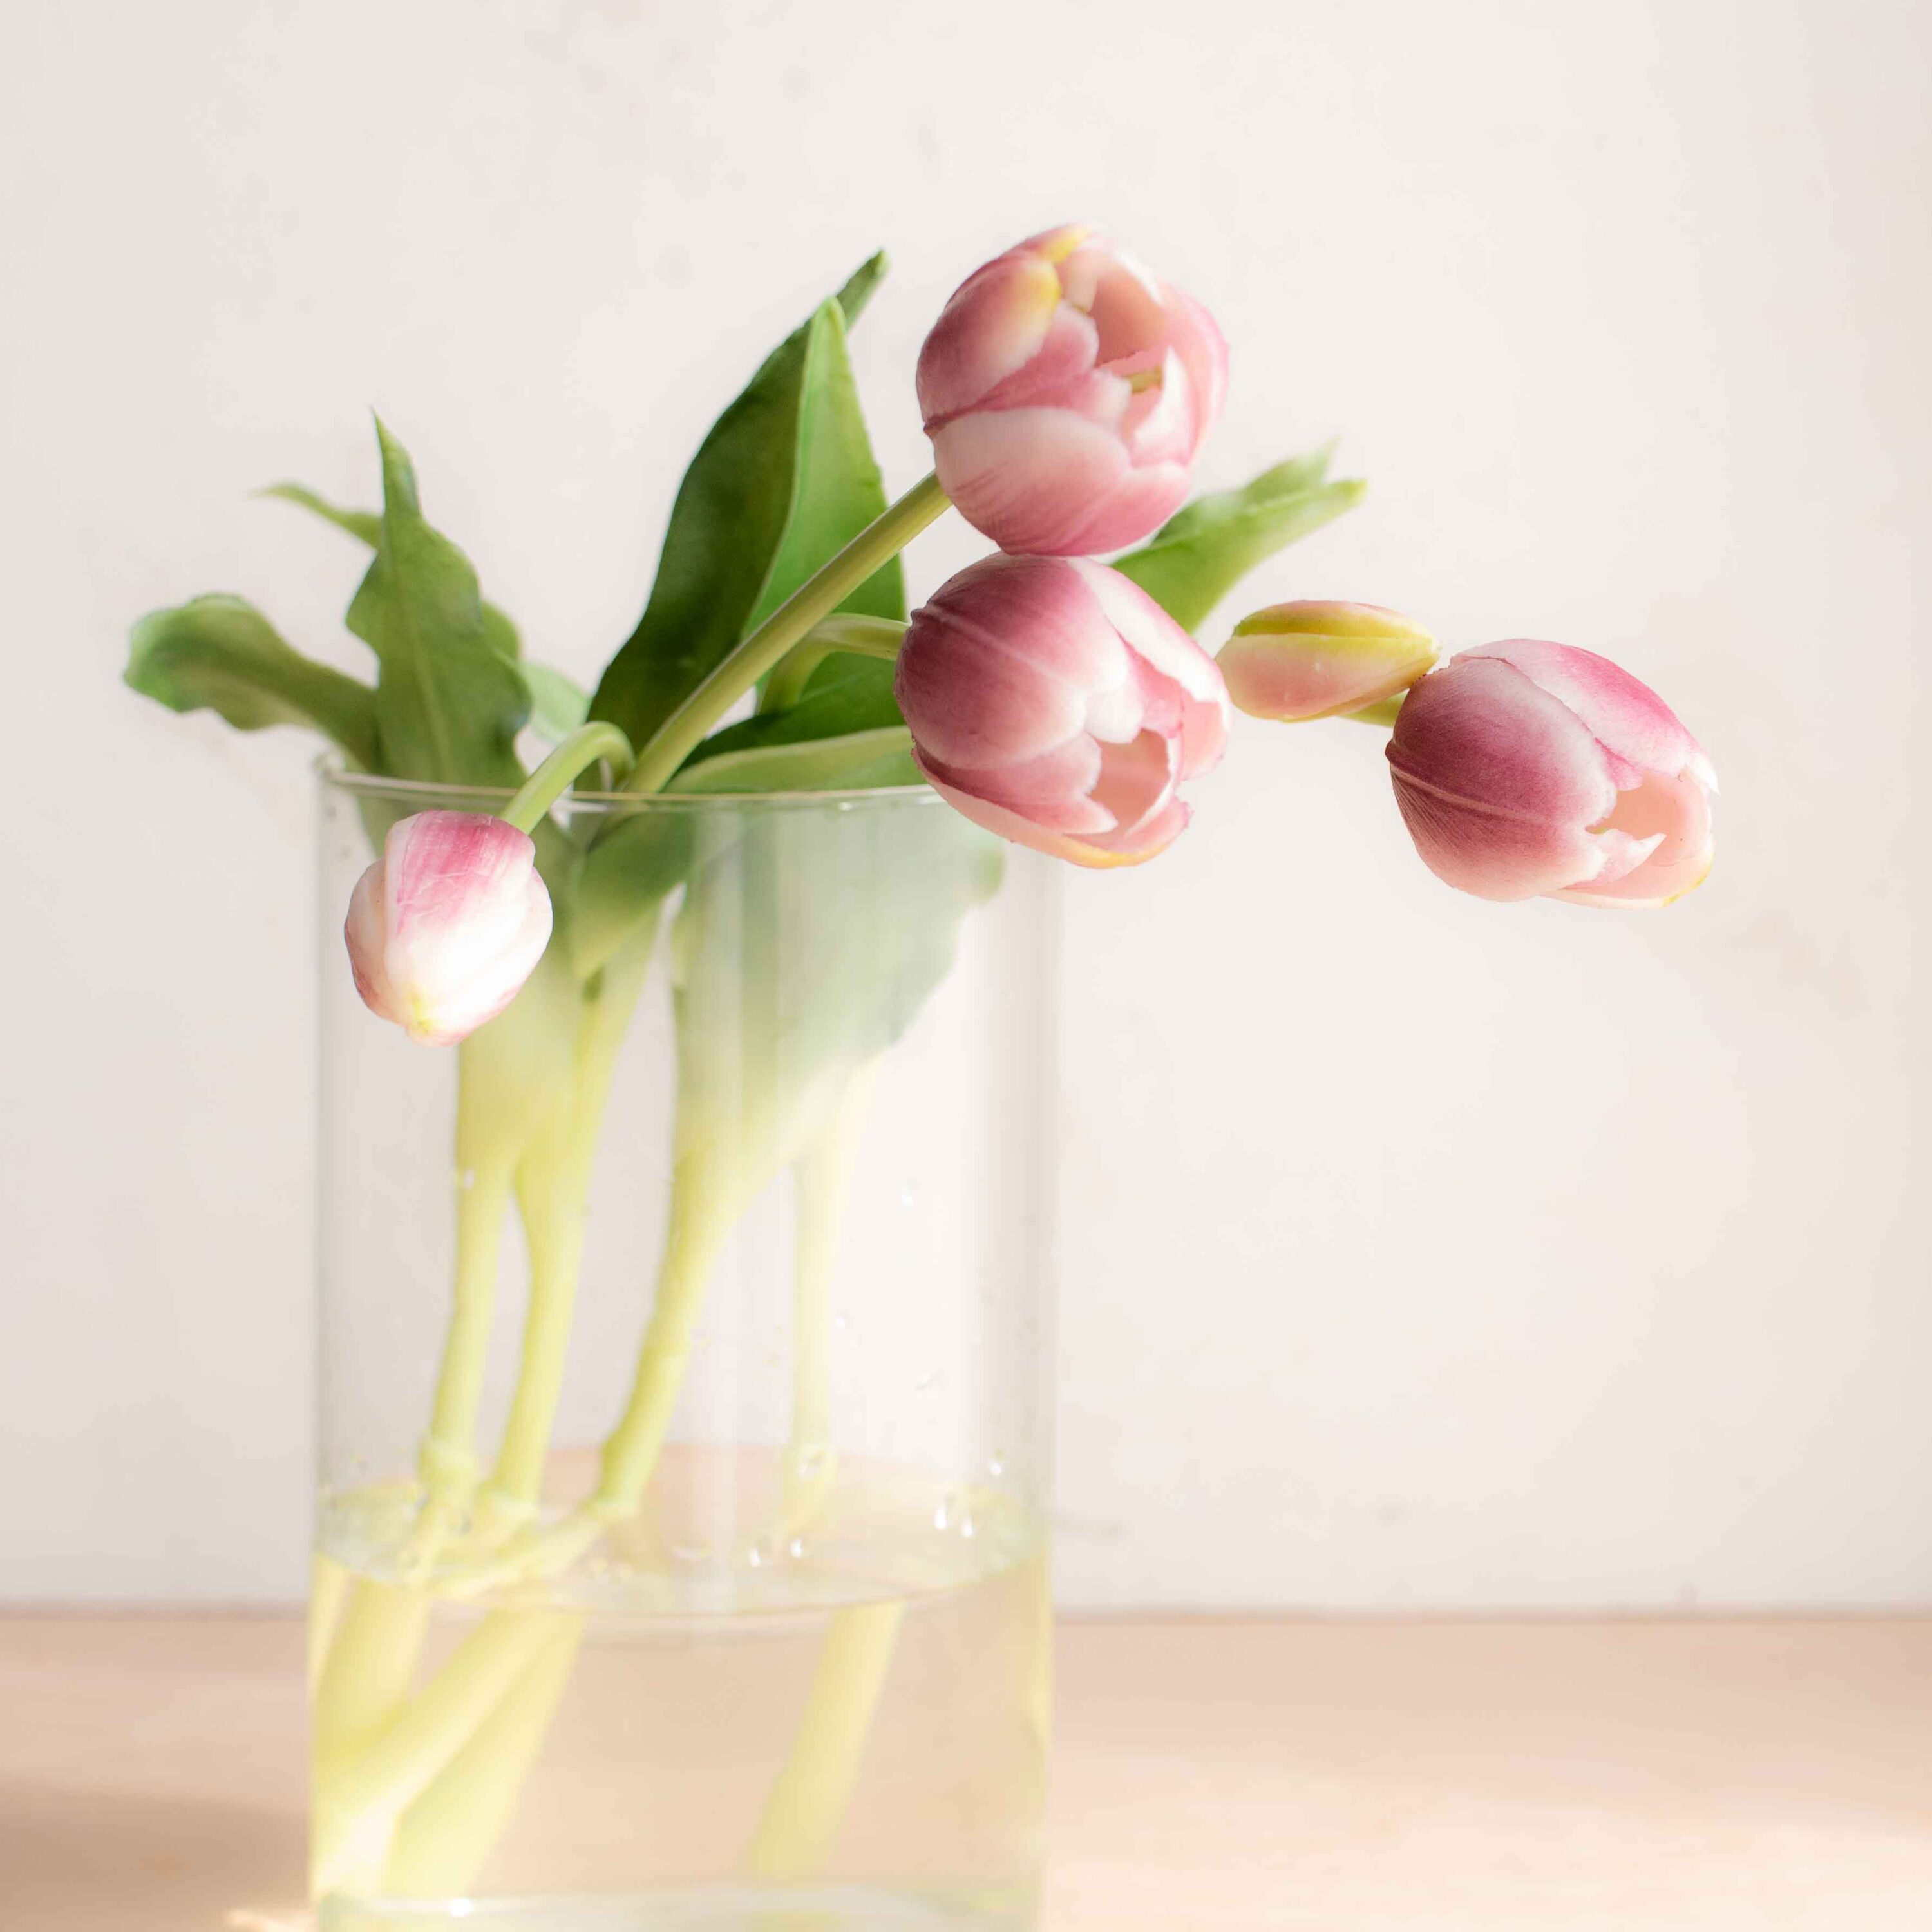 bellissimi tulipani real touch, estremamente realistici colore violetto